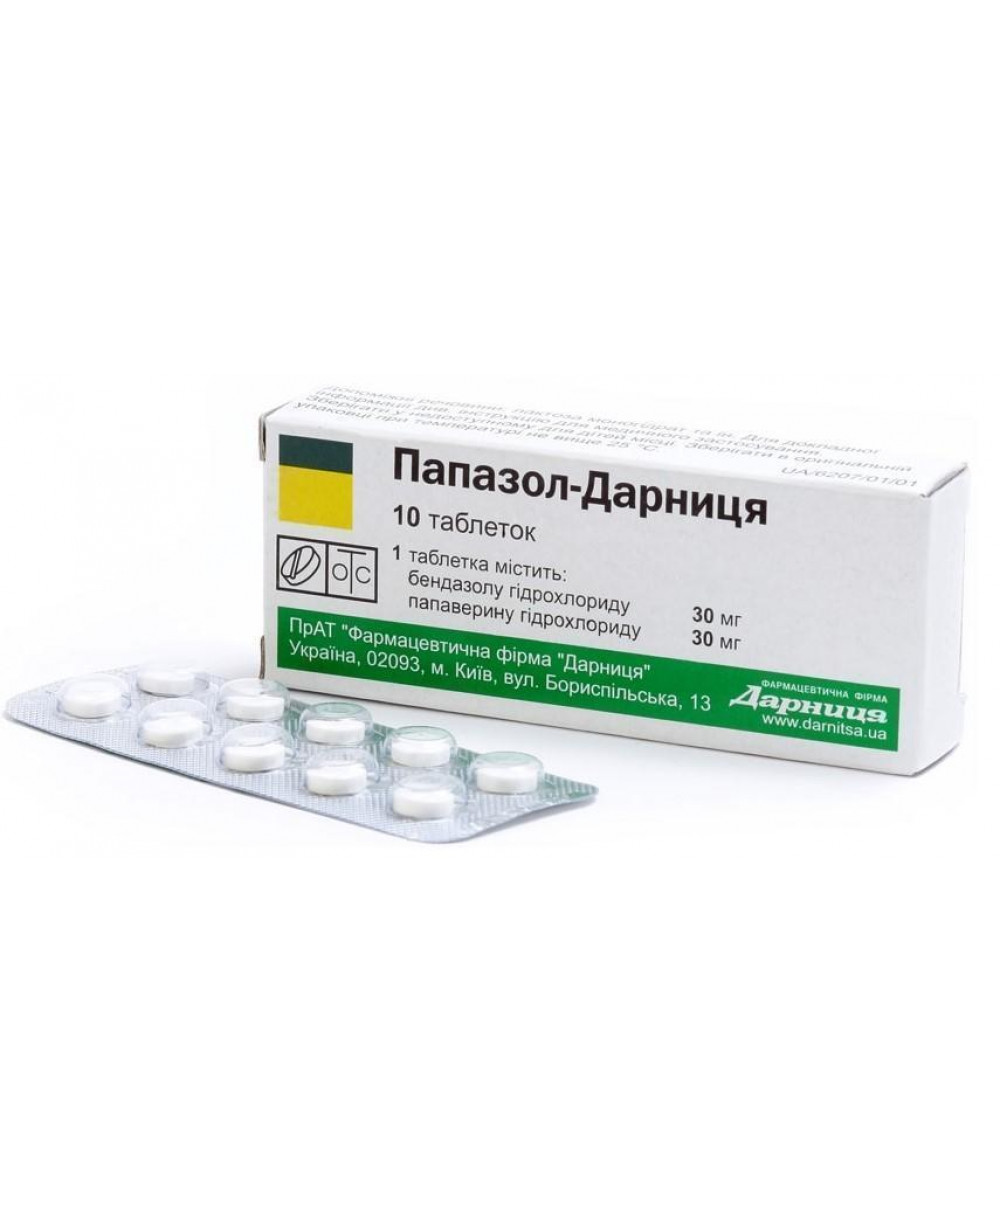 Теофиллин – инструкция по применению таблеток, отзывы, аналоги, цена